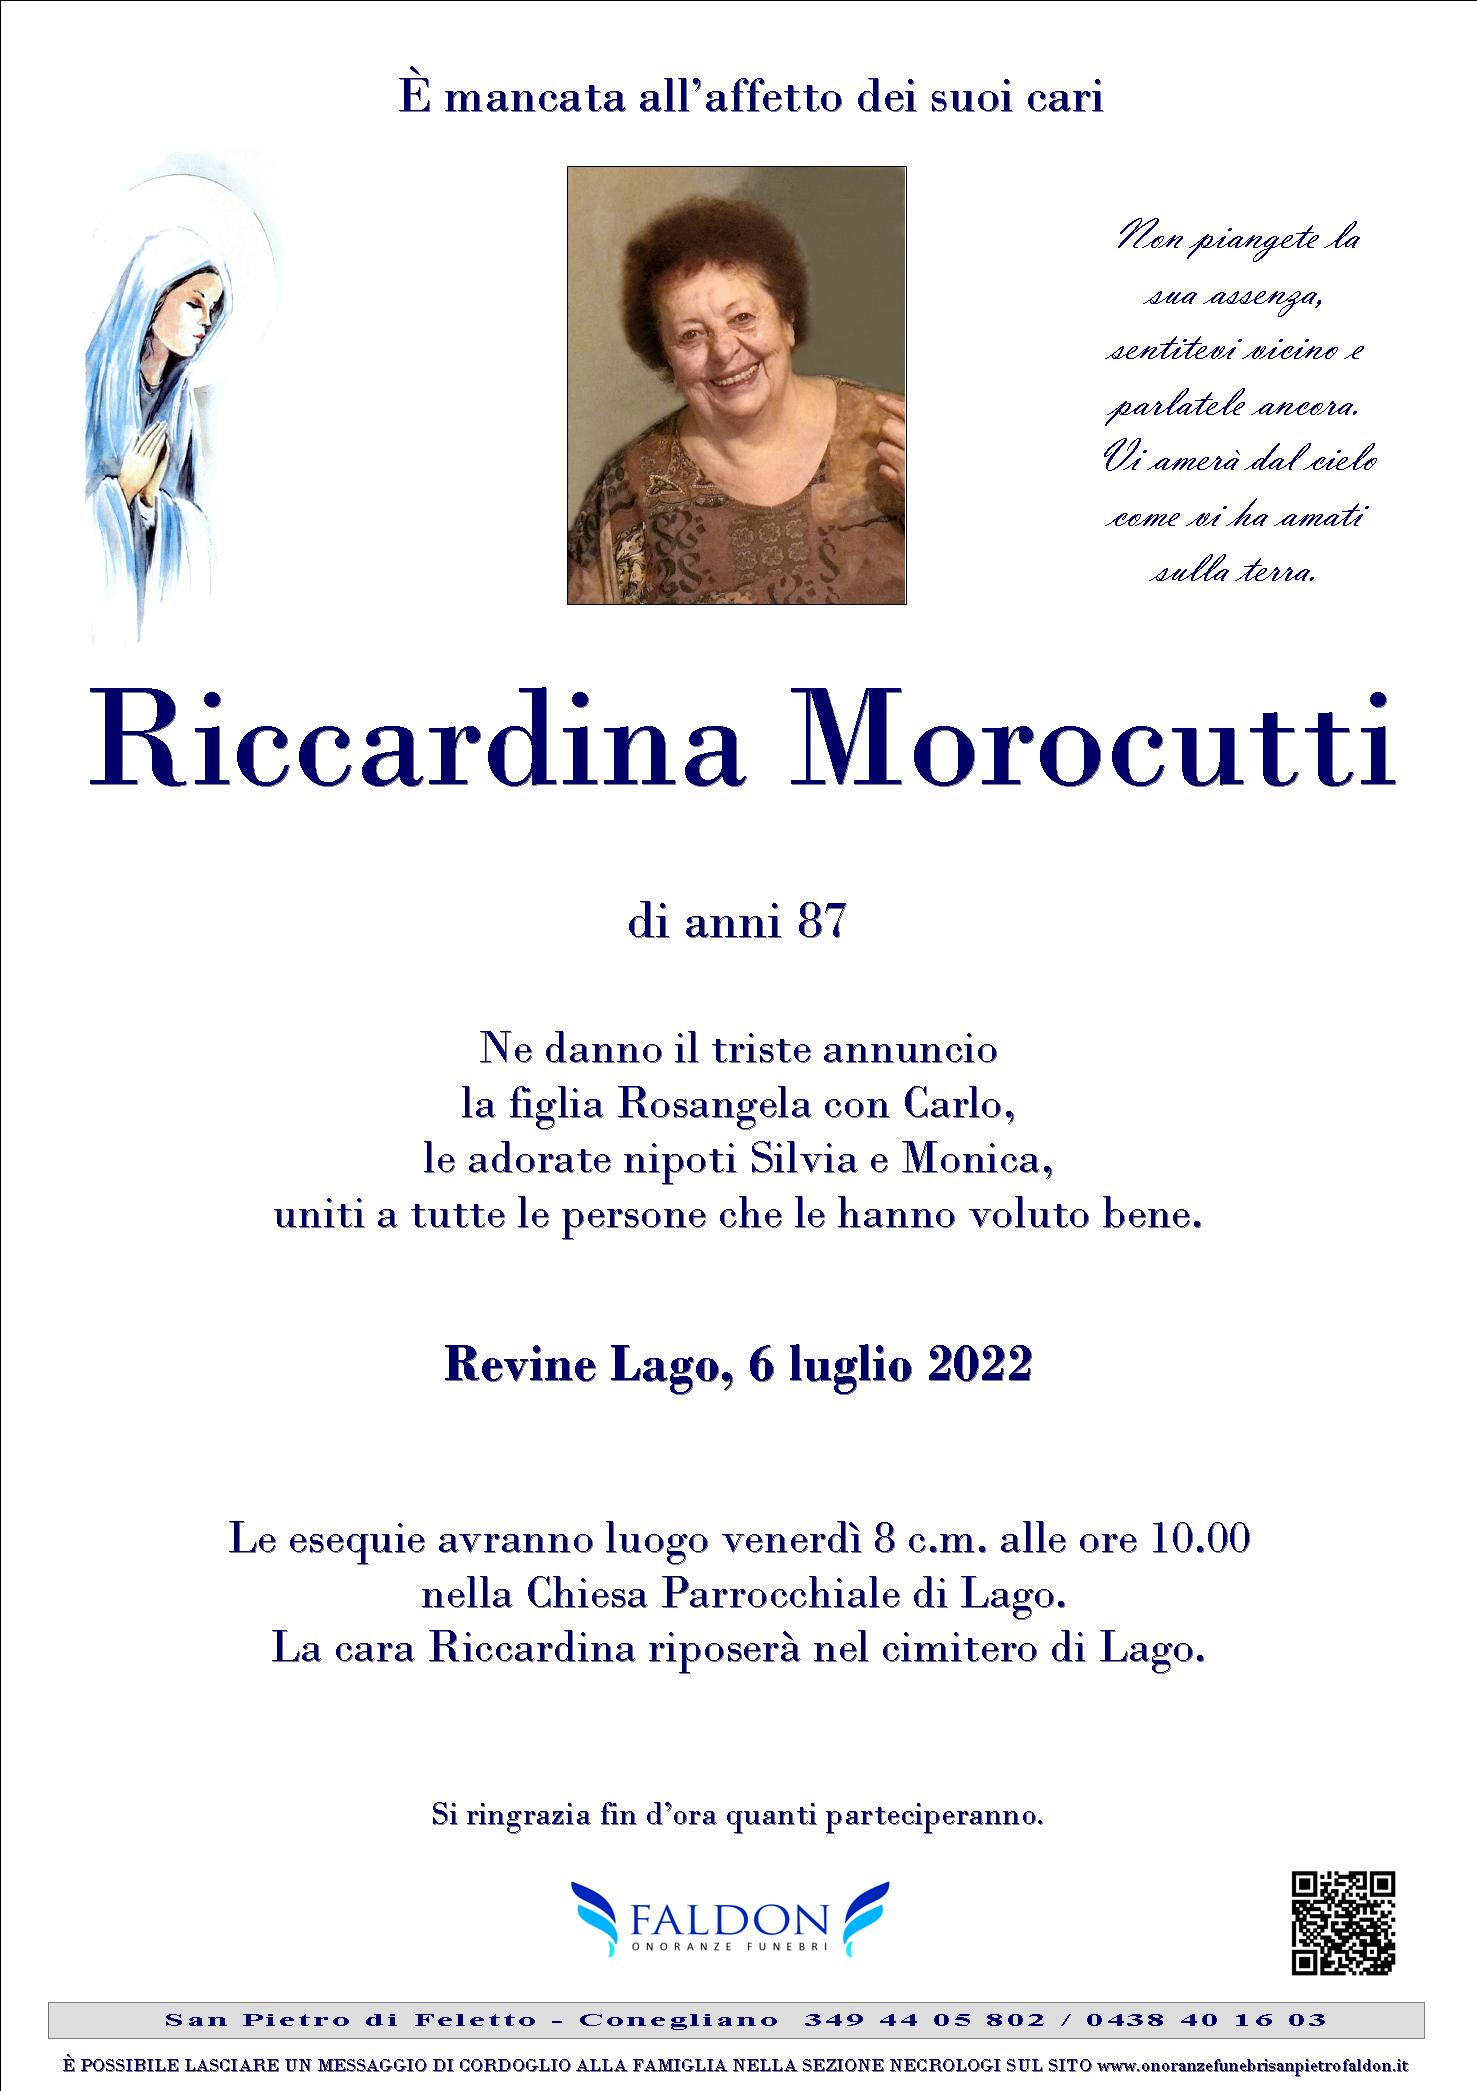 Riccardina Morocutti